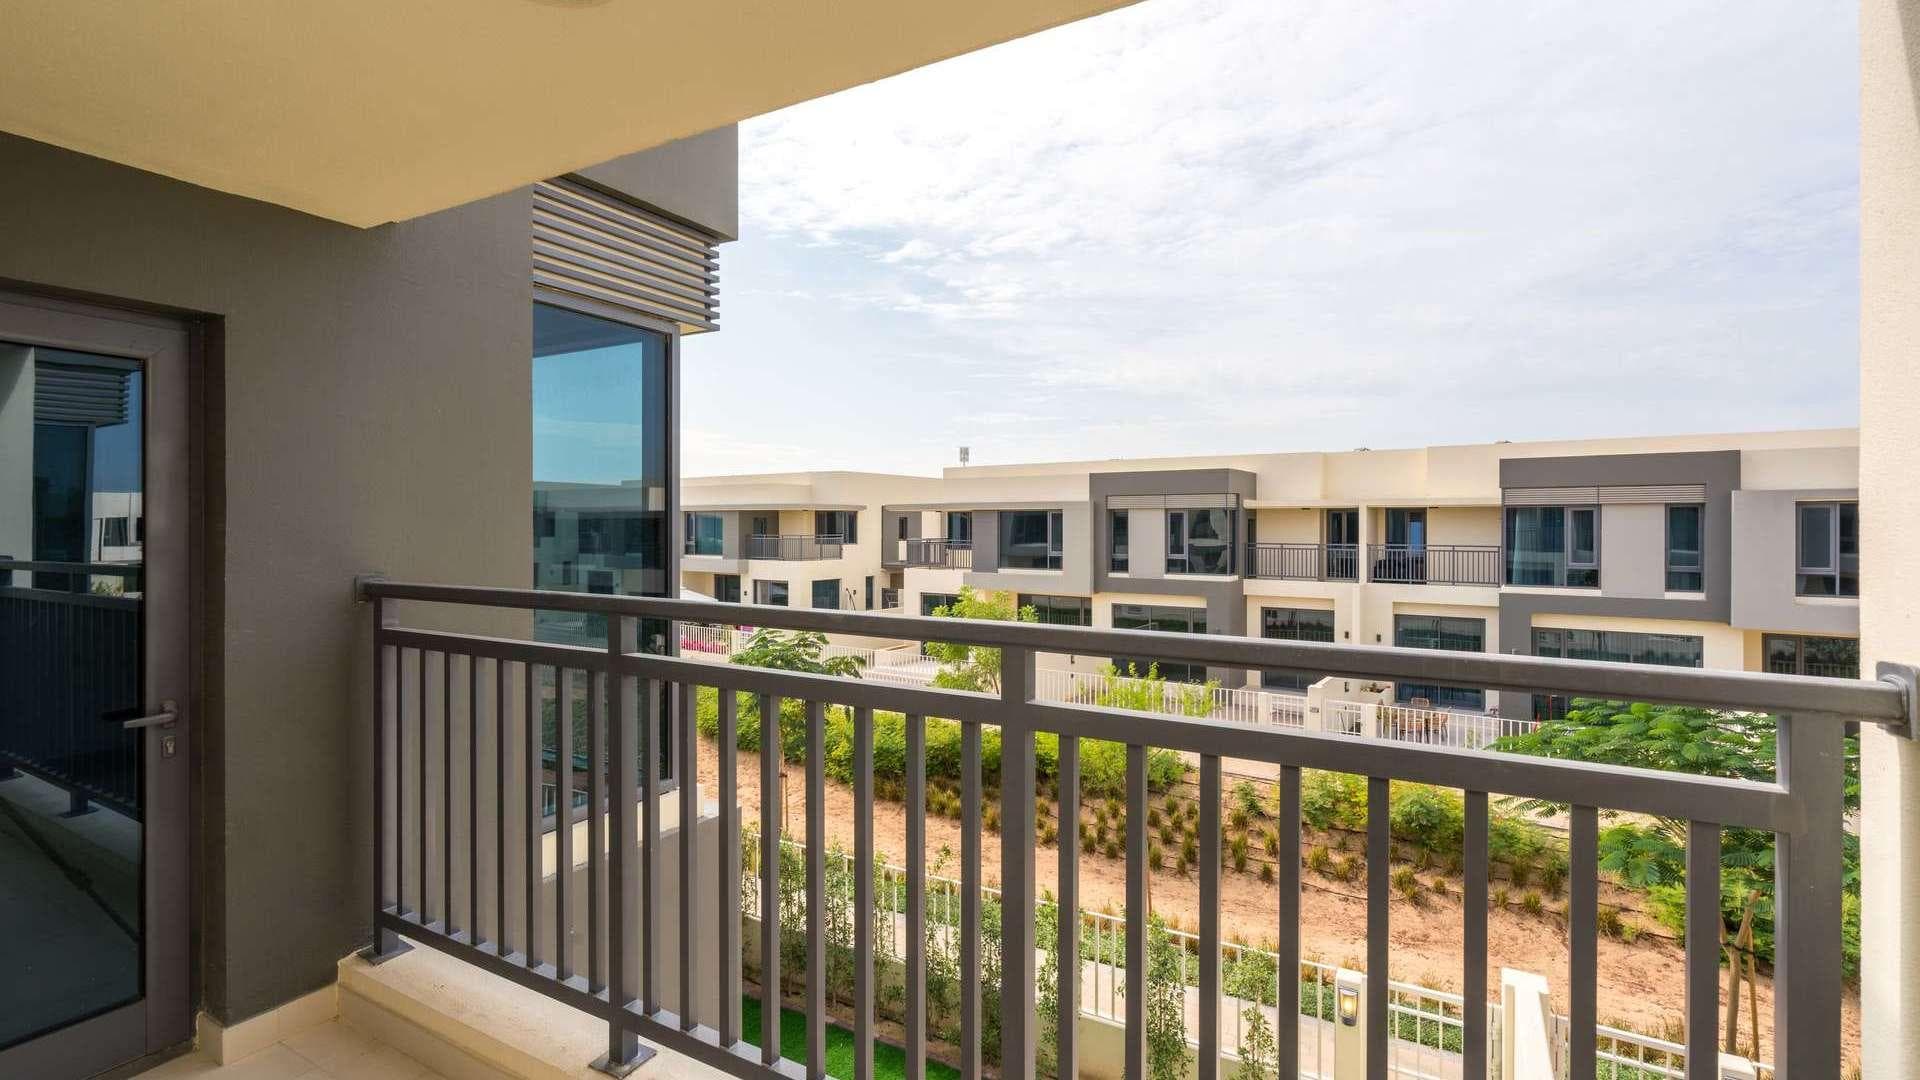 4 Bedroom Apartment For Rent Maple At Dubai Hills Estate Lp18257 260b95989b3c1200.jpg